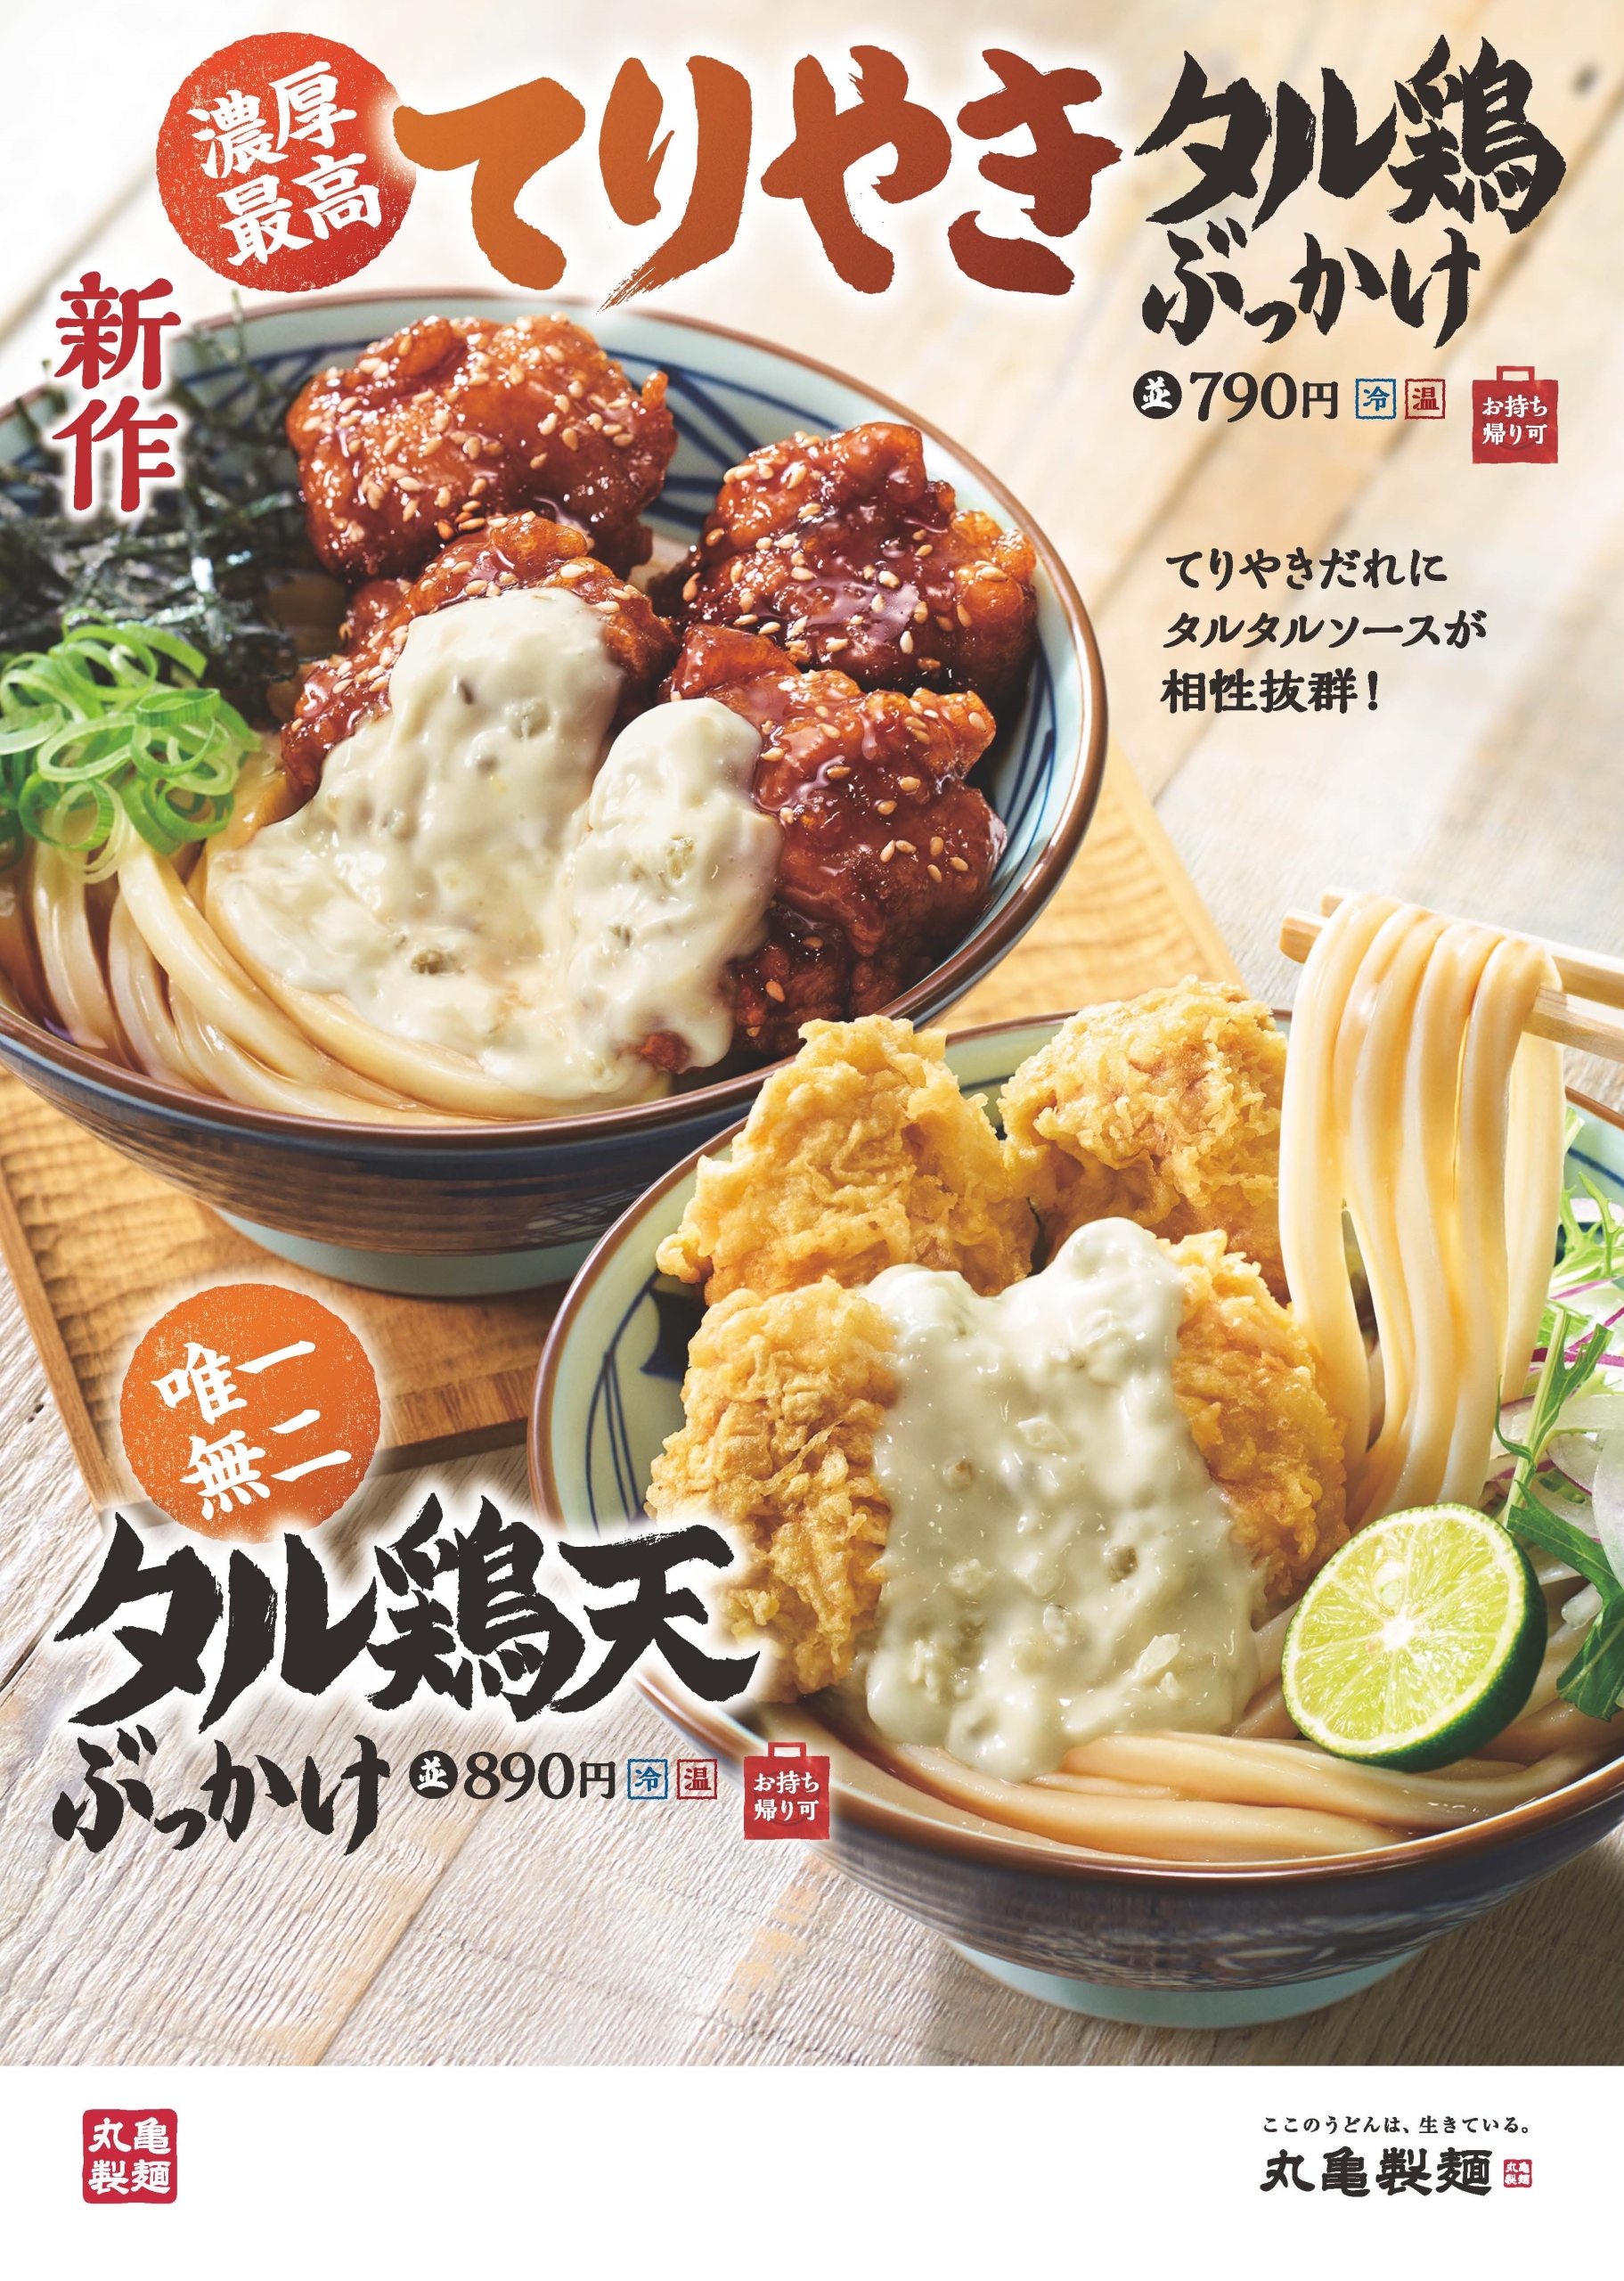 丸亀製麺「てりやきタル鶏ぶっかけうどん」「タル鶏天ぶっかけうどん」発売